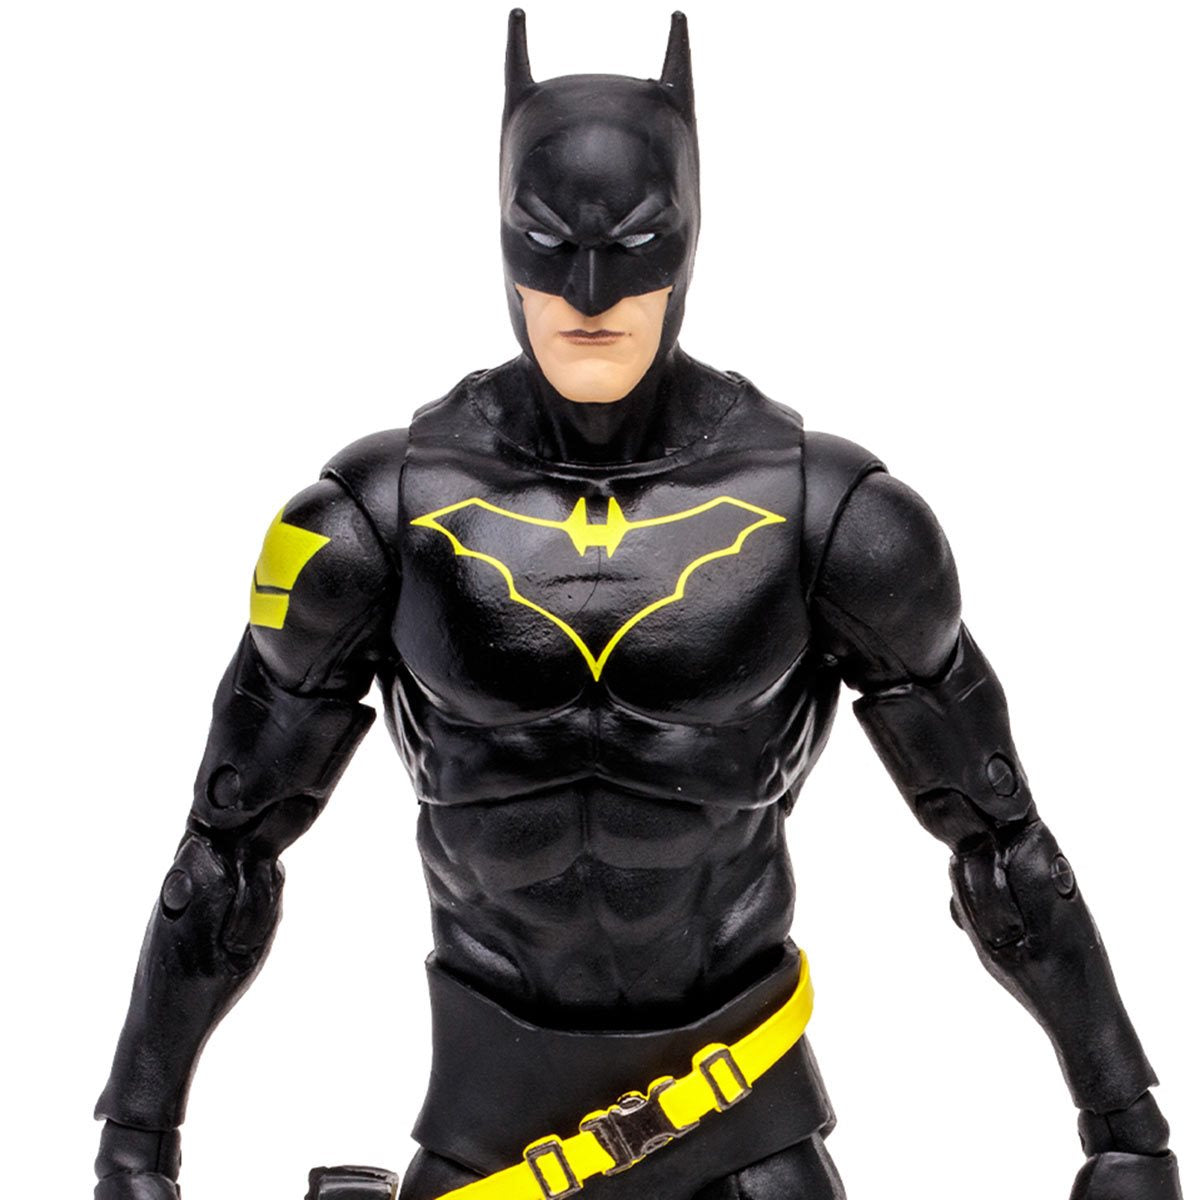 ألعاب ماكفارلين دي سي مالتيفيرس ويف 14 جيم جوردون في دور باتمان باتمان: شخصية إندجامي بمقياس 7 بوصة